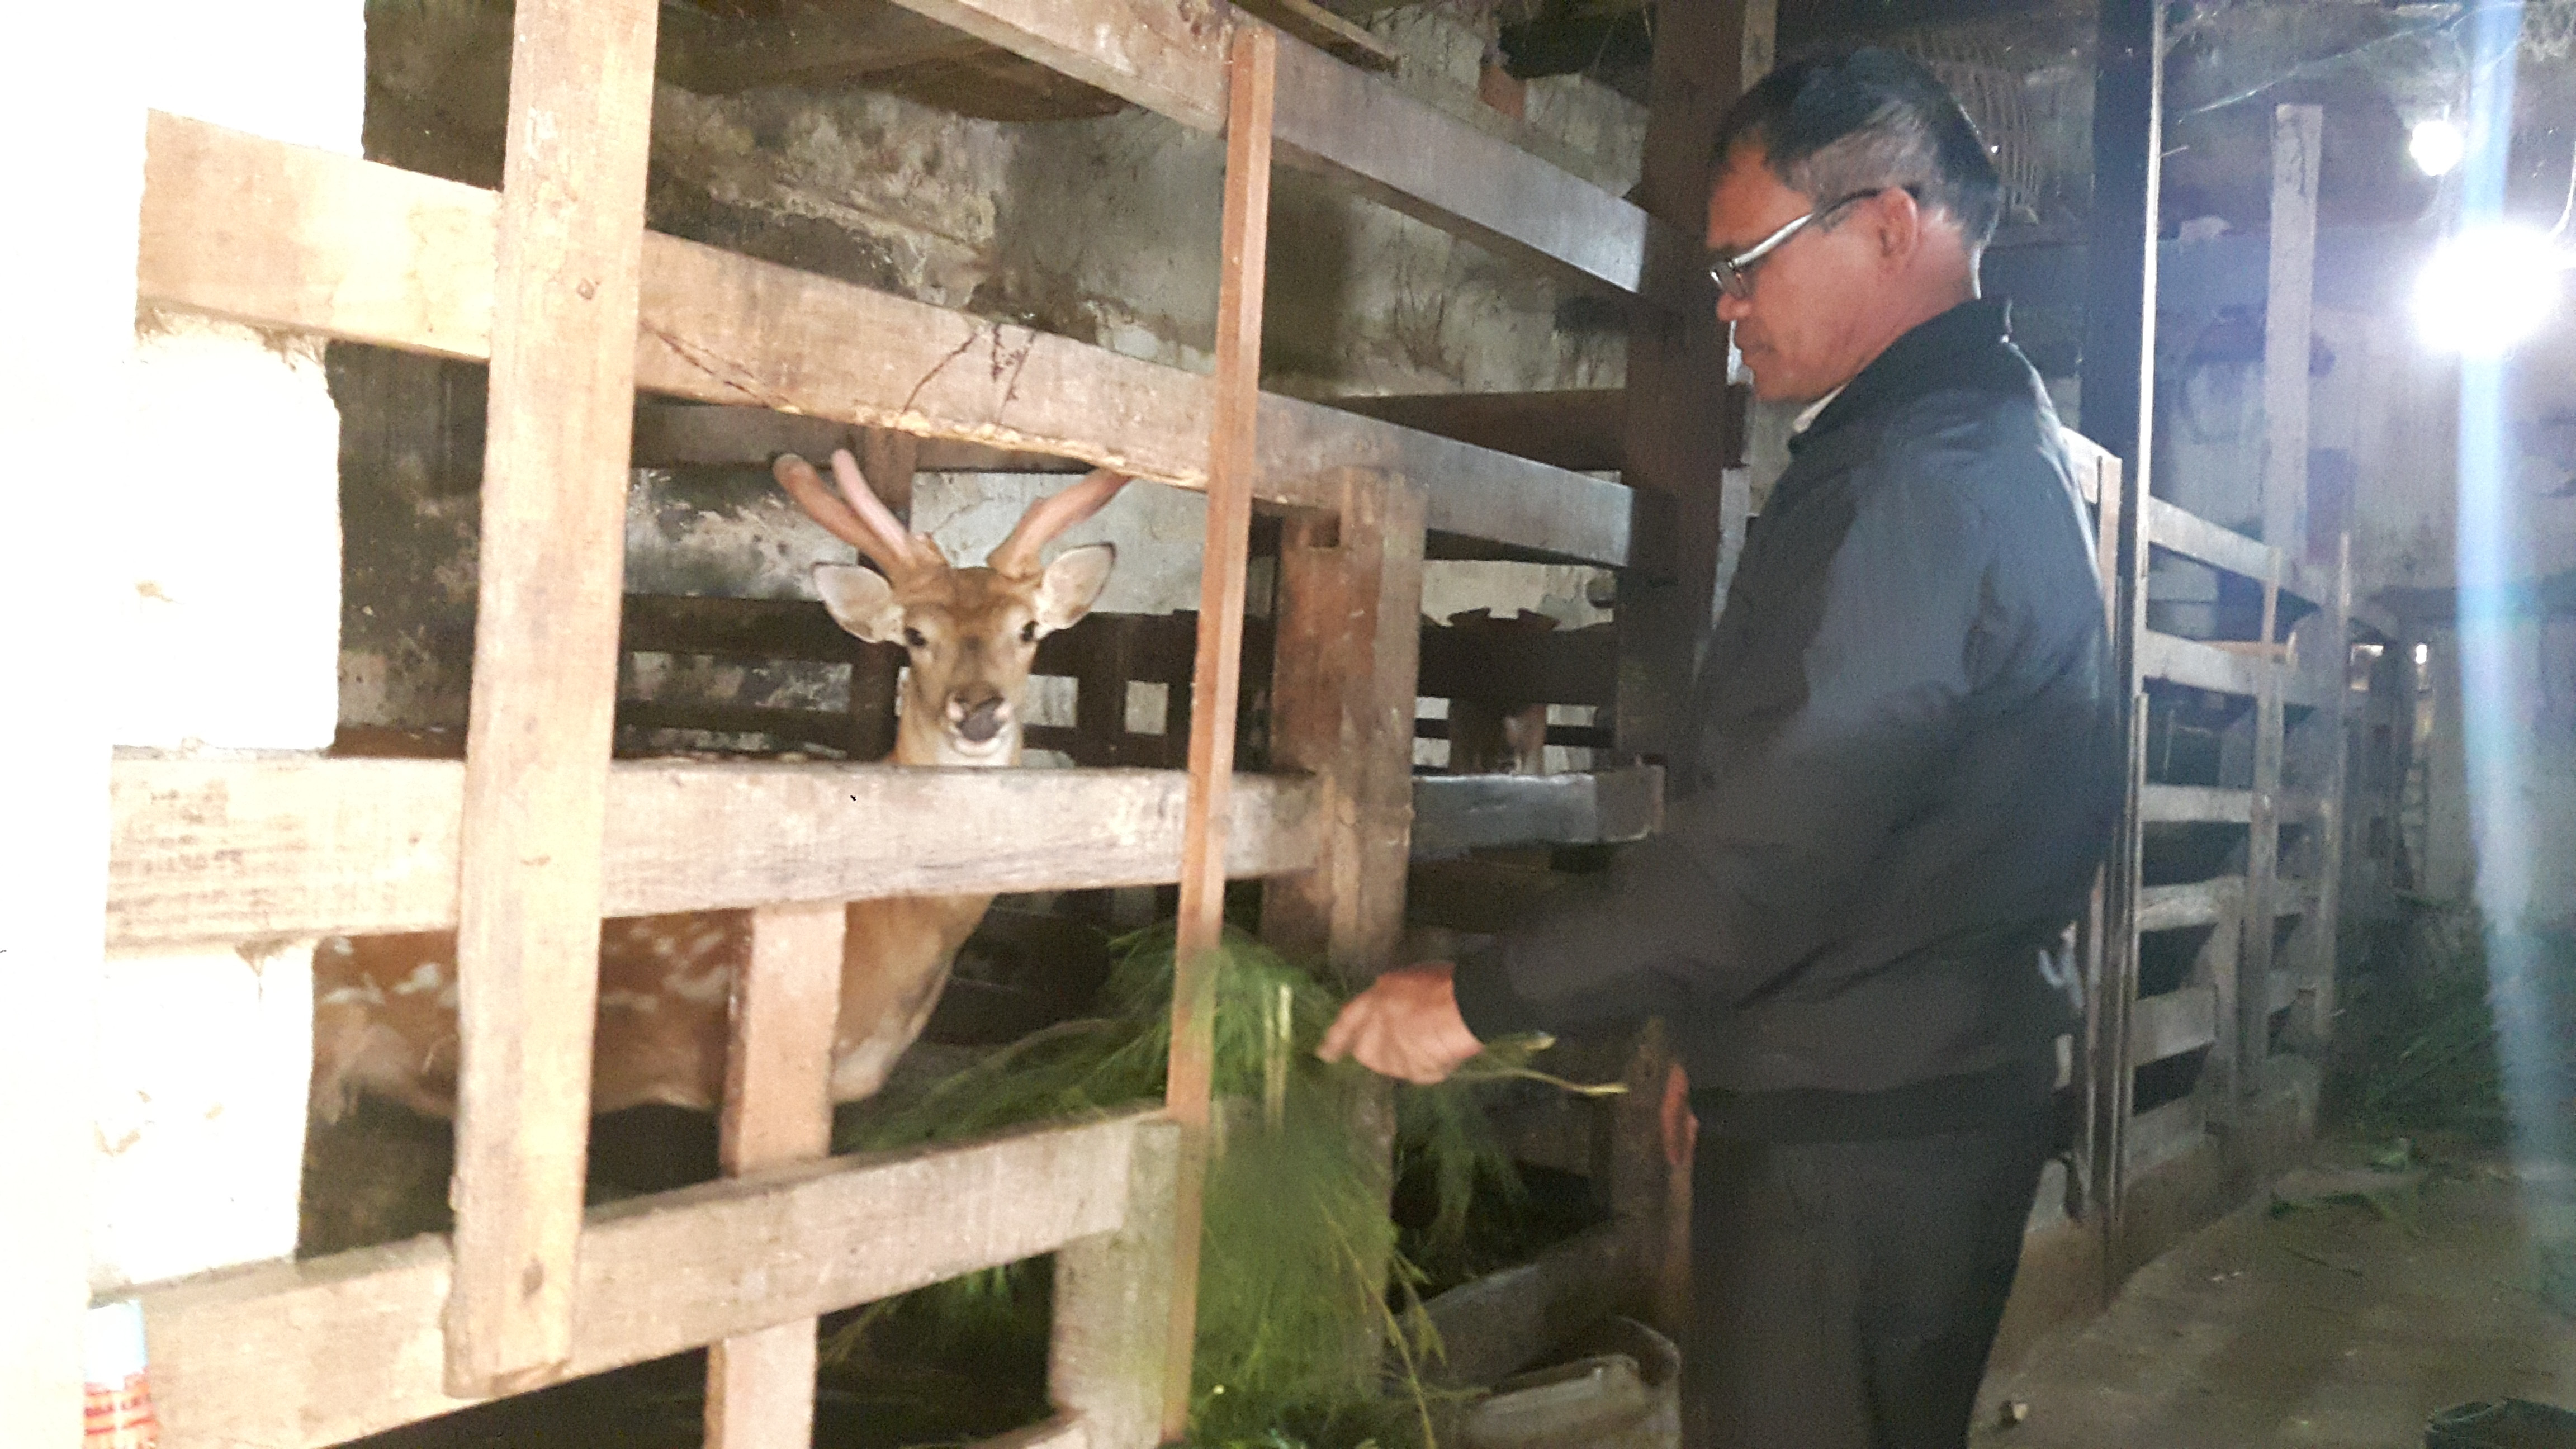 Huyện Quỳnh Lưu hiện có hơn 14 nghìn con hươu, nai, mỗi năm từ bán nhung hươu, lộc nai cho người nuôi thu nhập hàng chục tỷ đồng. Ảnh: Hồng Diện